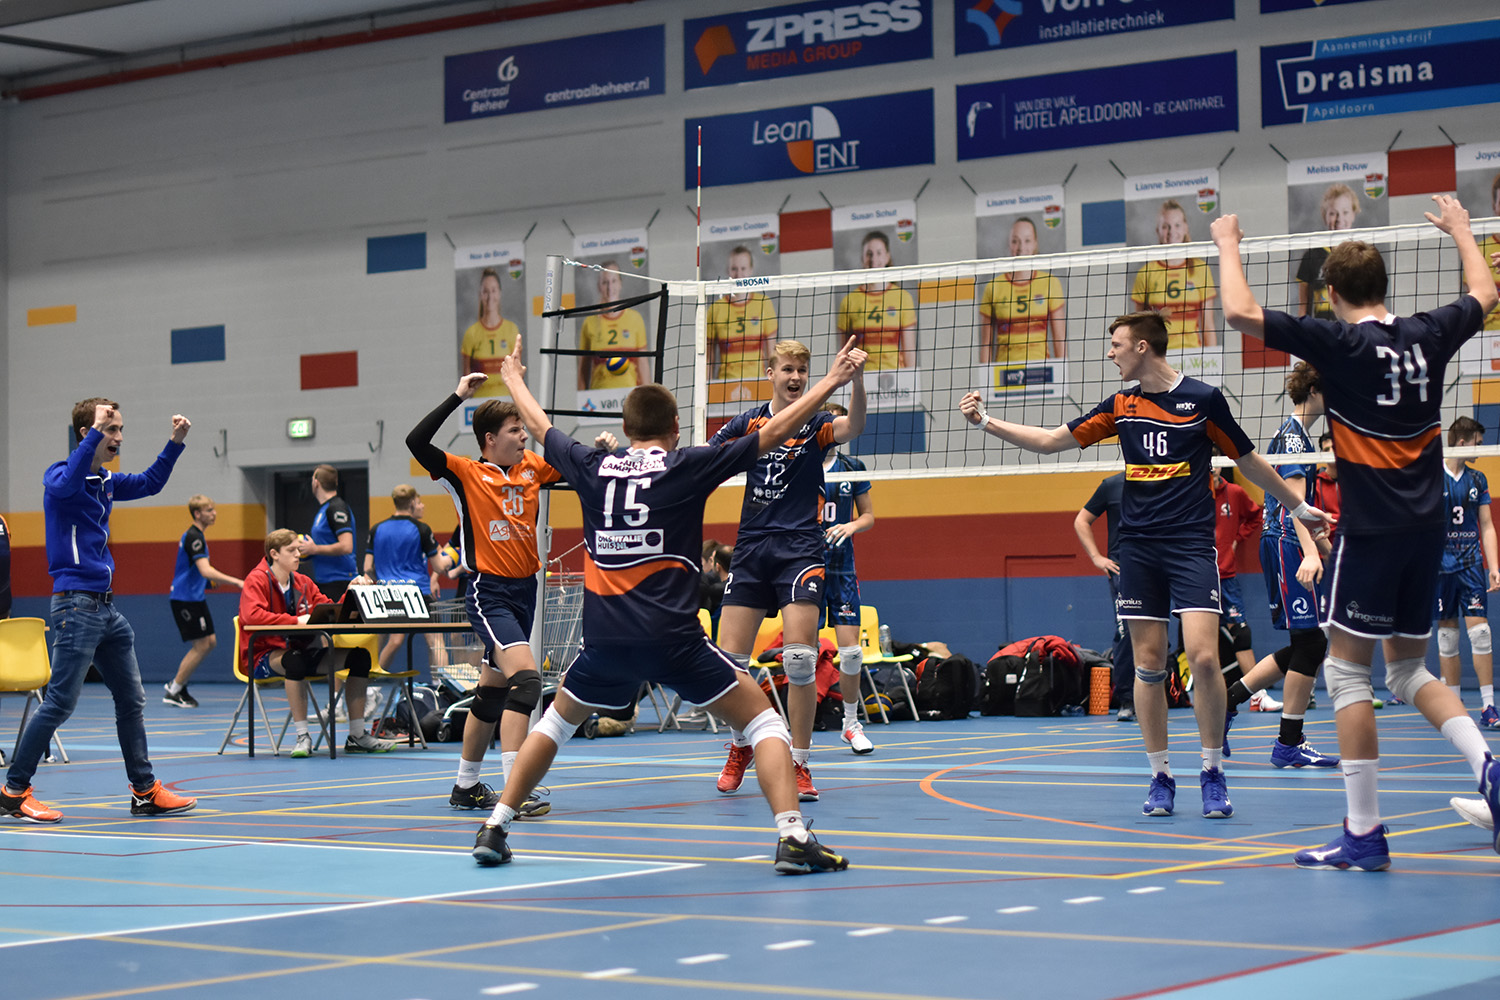 Oppervlakkig kanker mout Link Dynamo toernooi 2019 · Next Volley Dordrecht